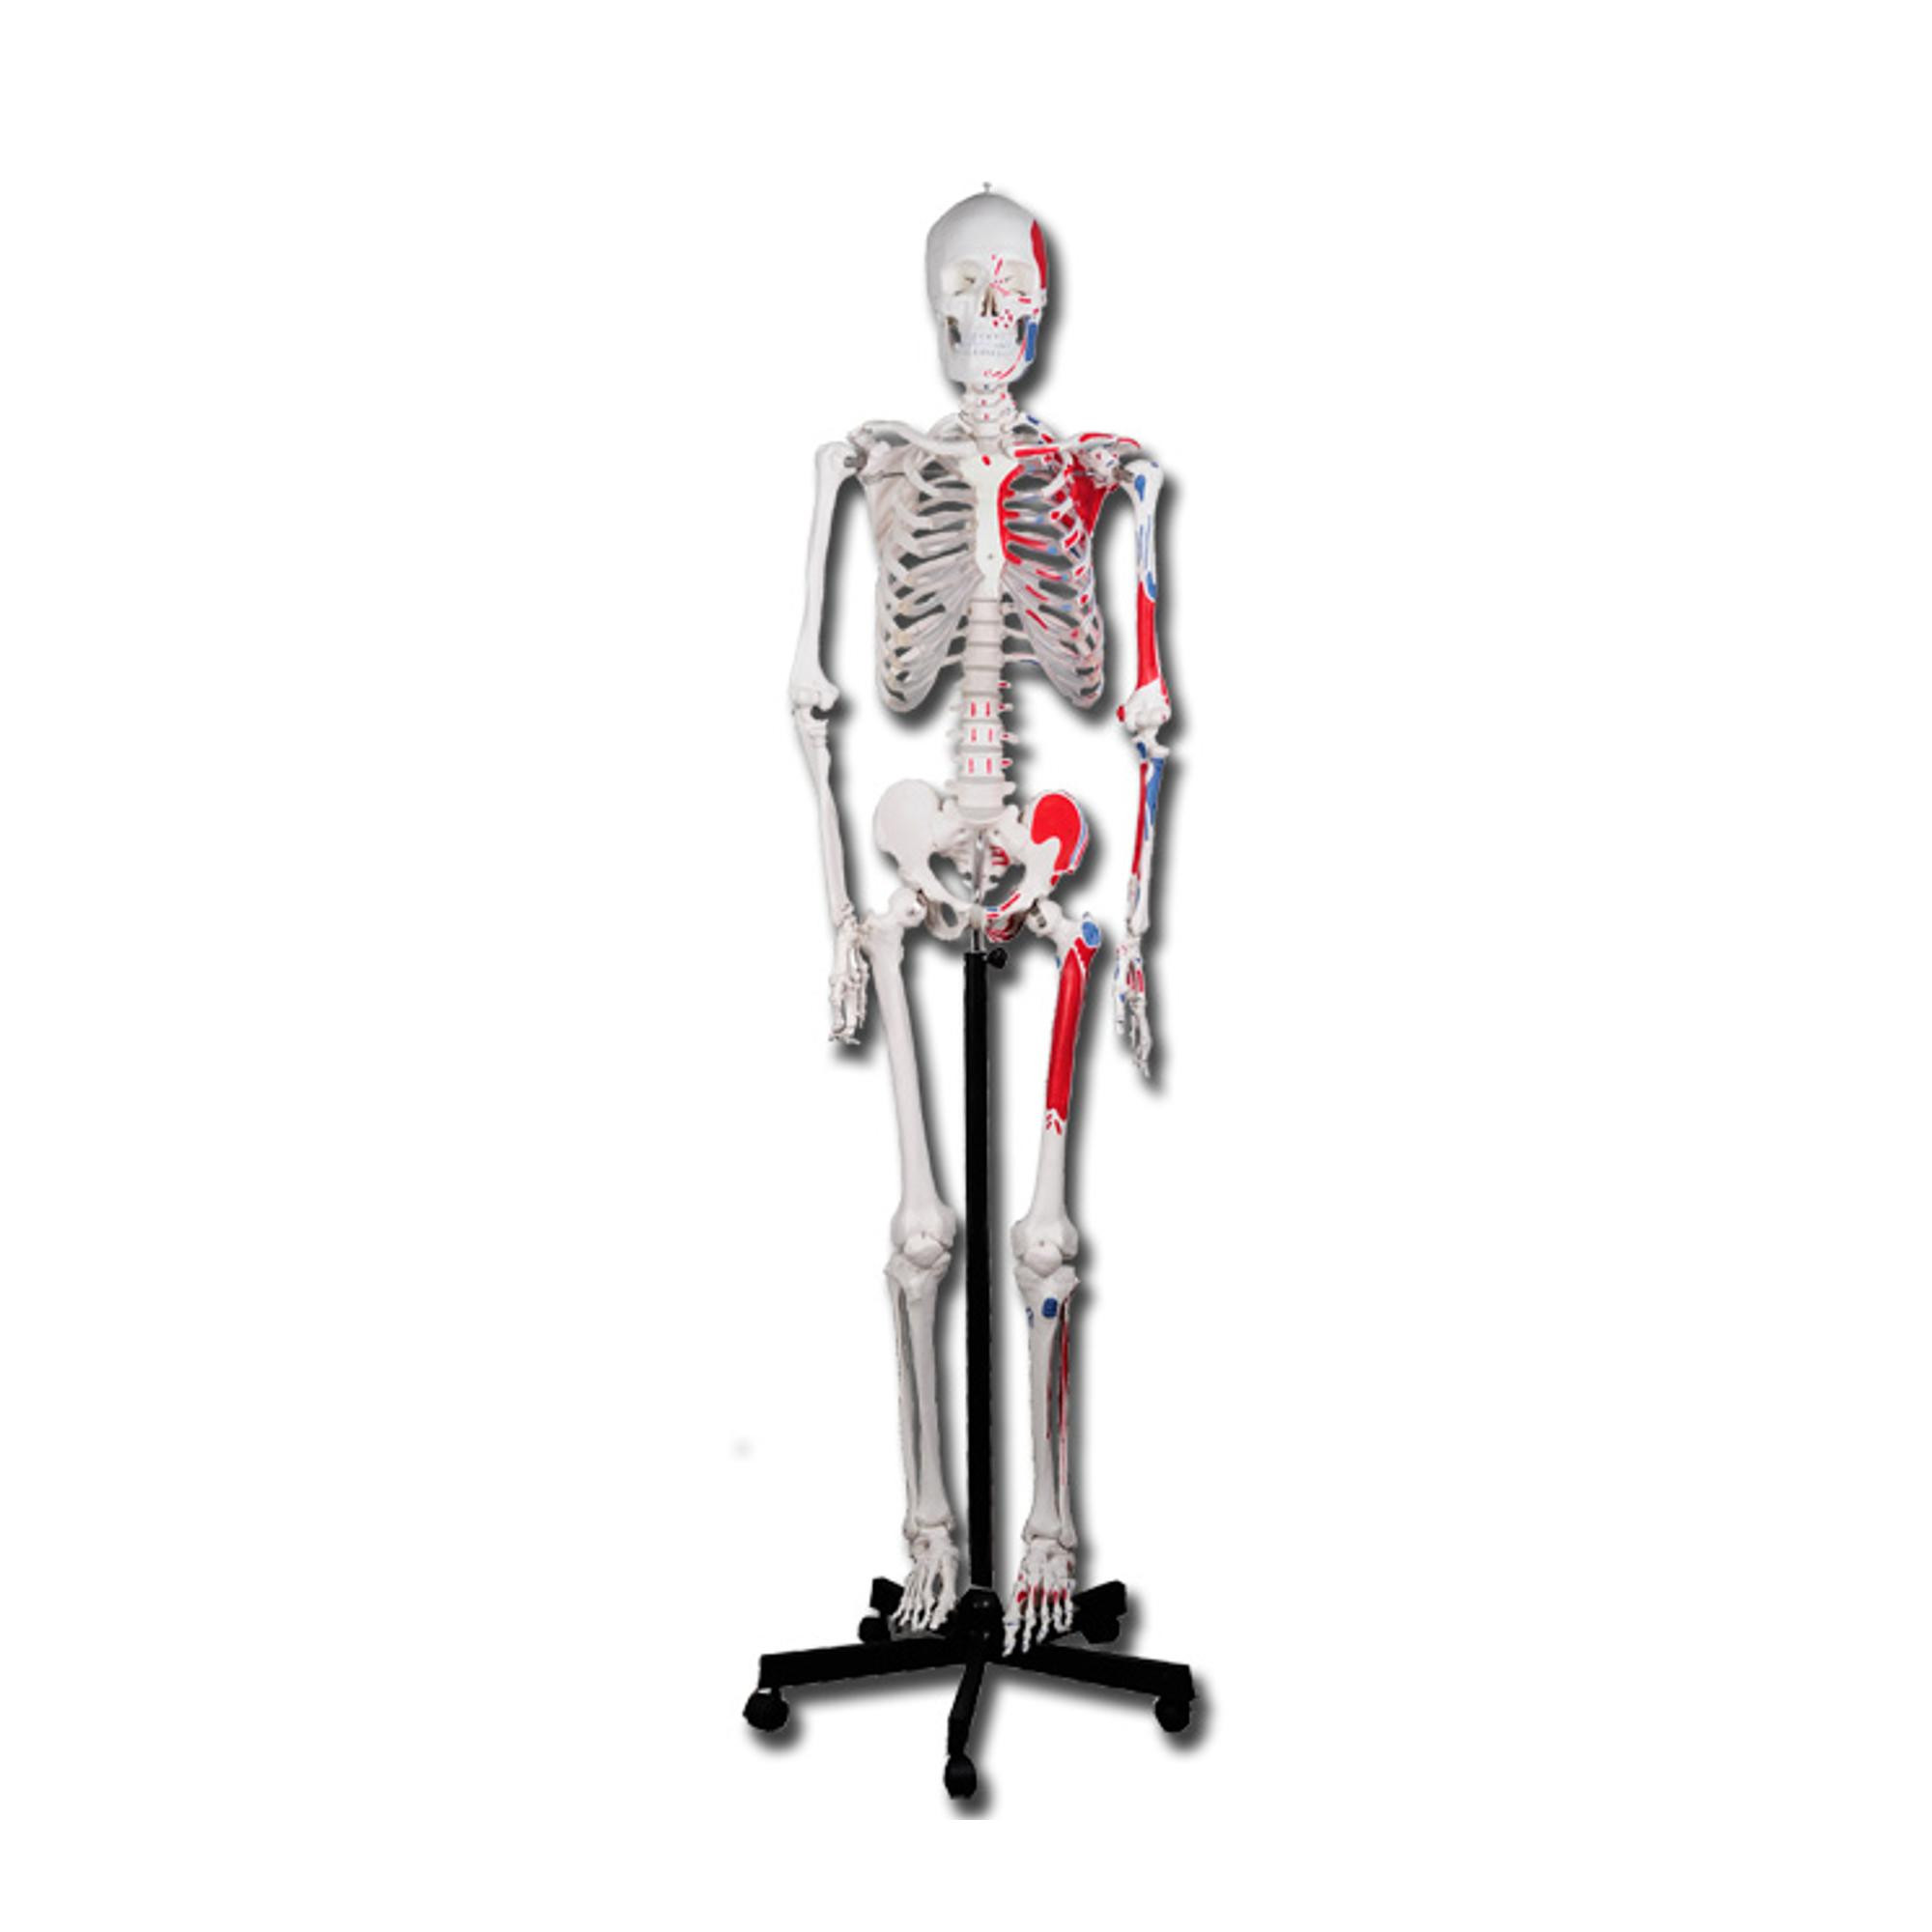 Squelette Anatomie, détaillé en grandeur nature, Les articulations